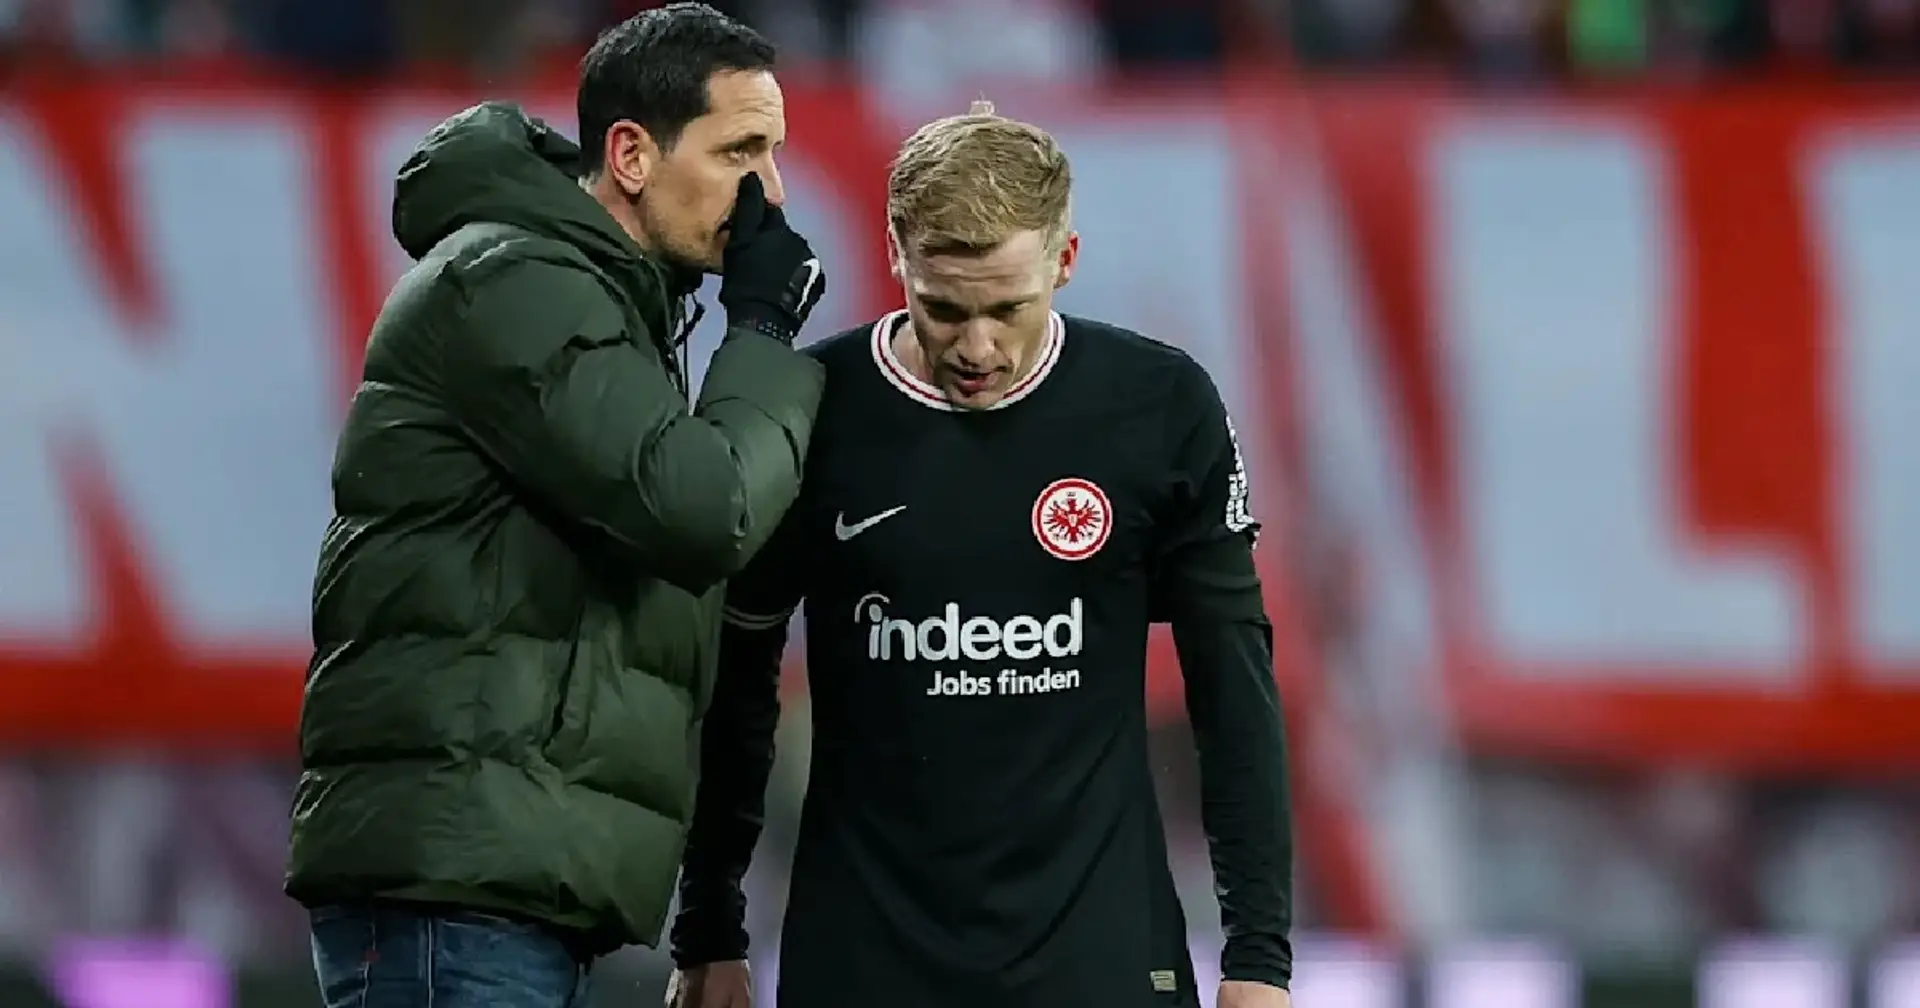 Frankfurt coach issues apology to Van de Beek